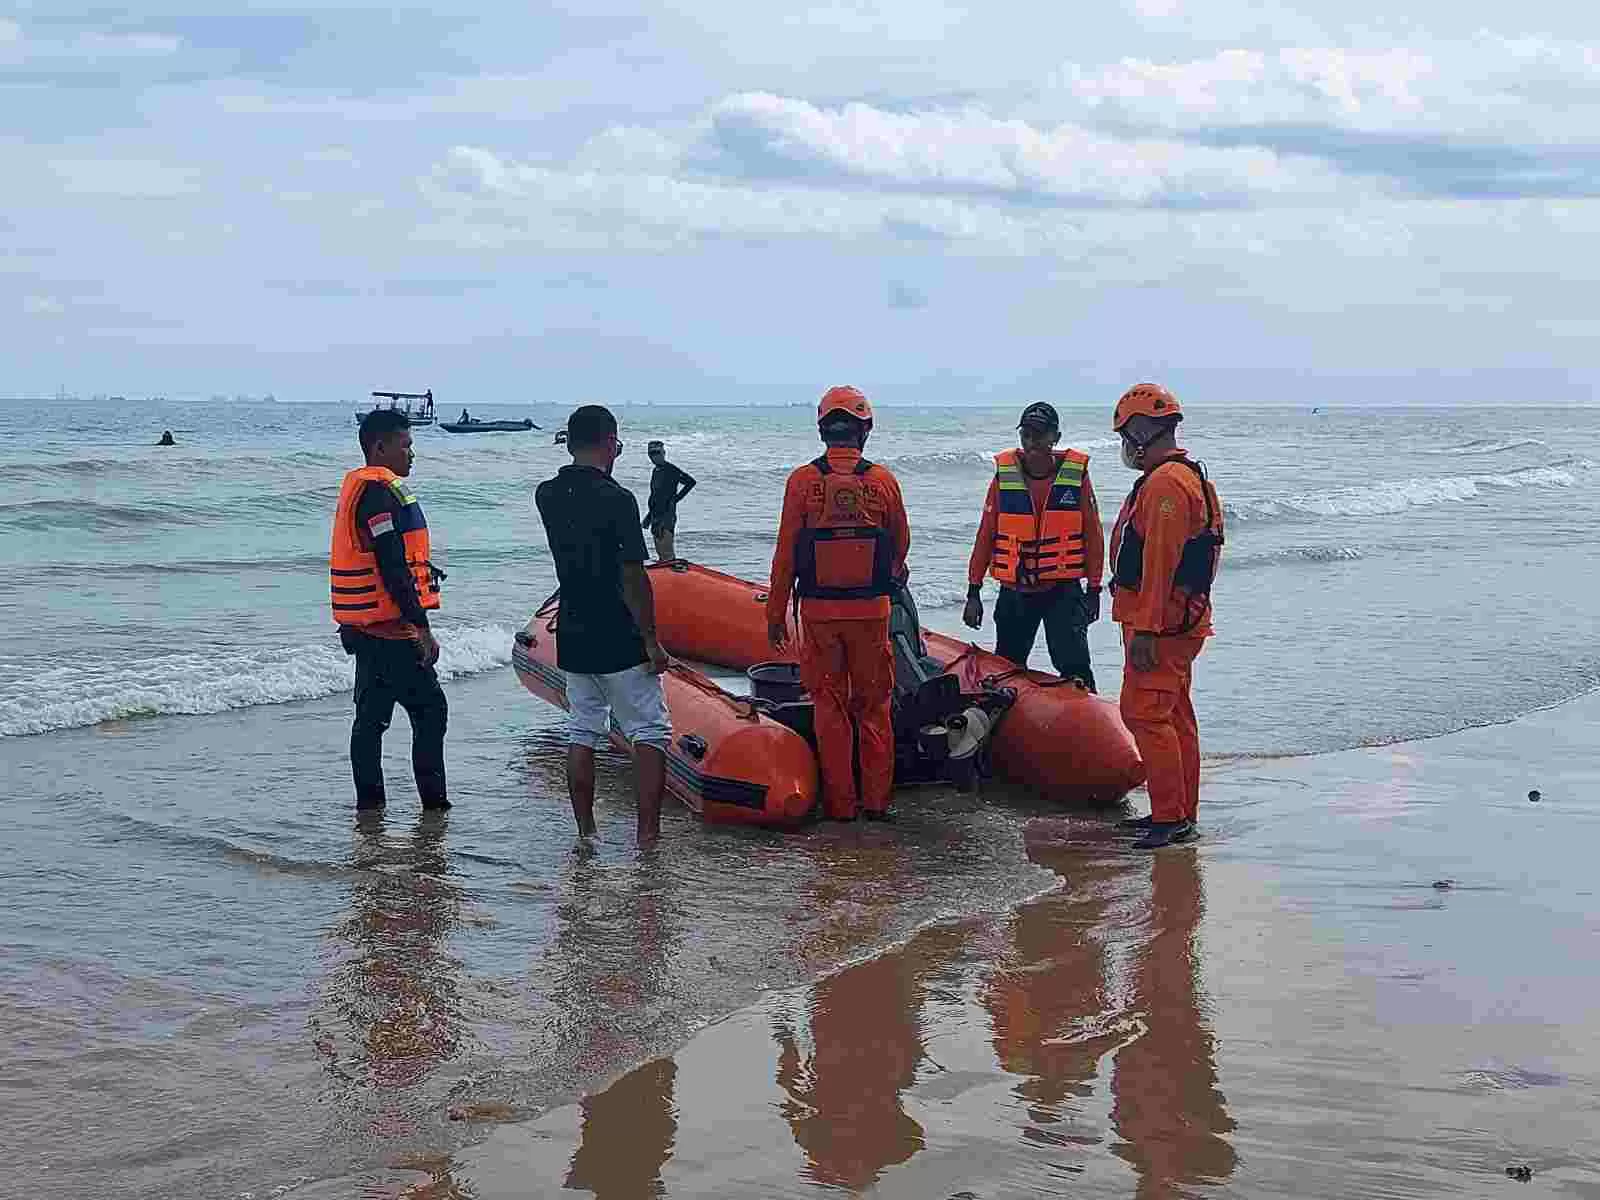 OPERASI PENCARIAN : Selain Basarnas, sejumlah unsur terlibat dalam pencarian korban tenggelam di Pantai Manggar, mulai dari BPBD Balikpapan dan relawan.